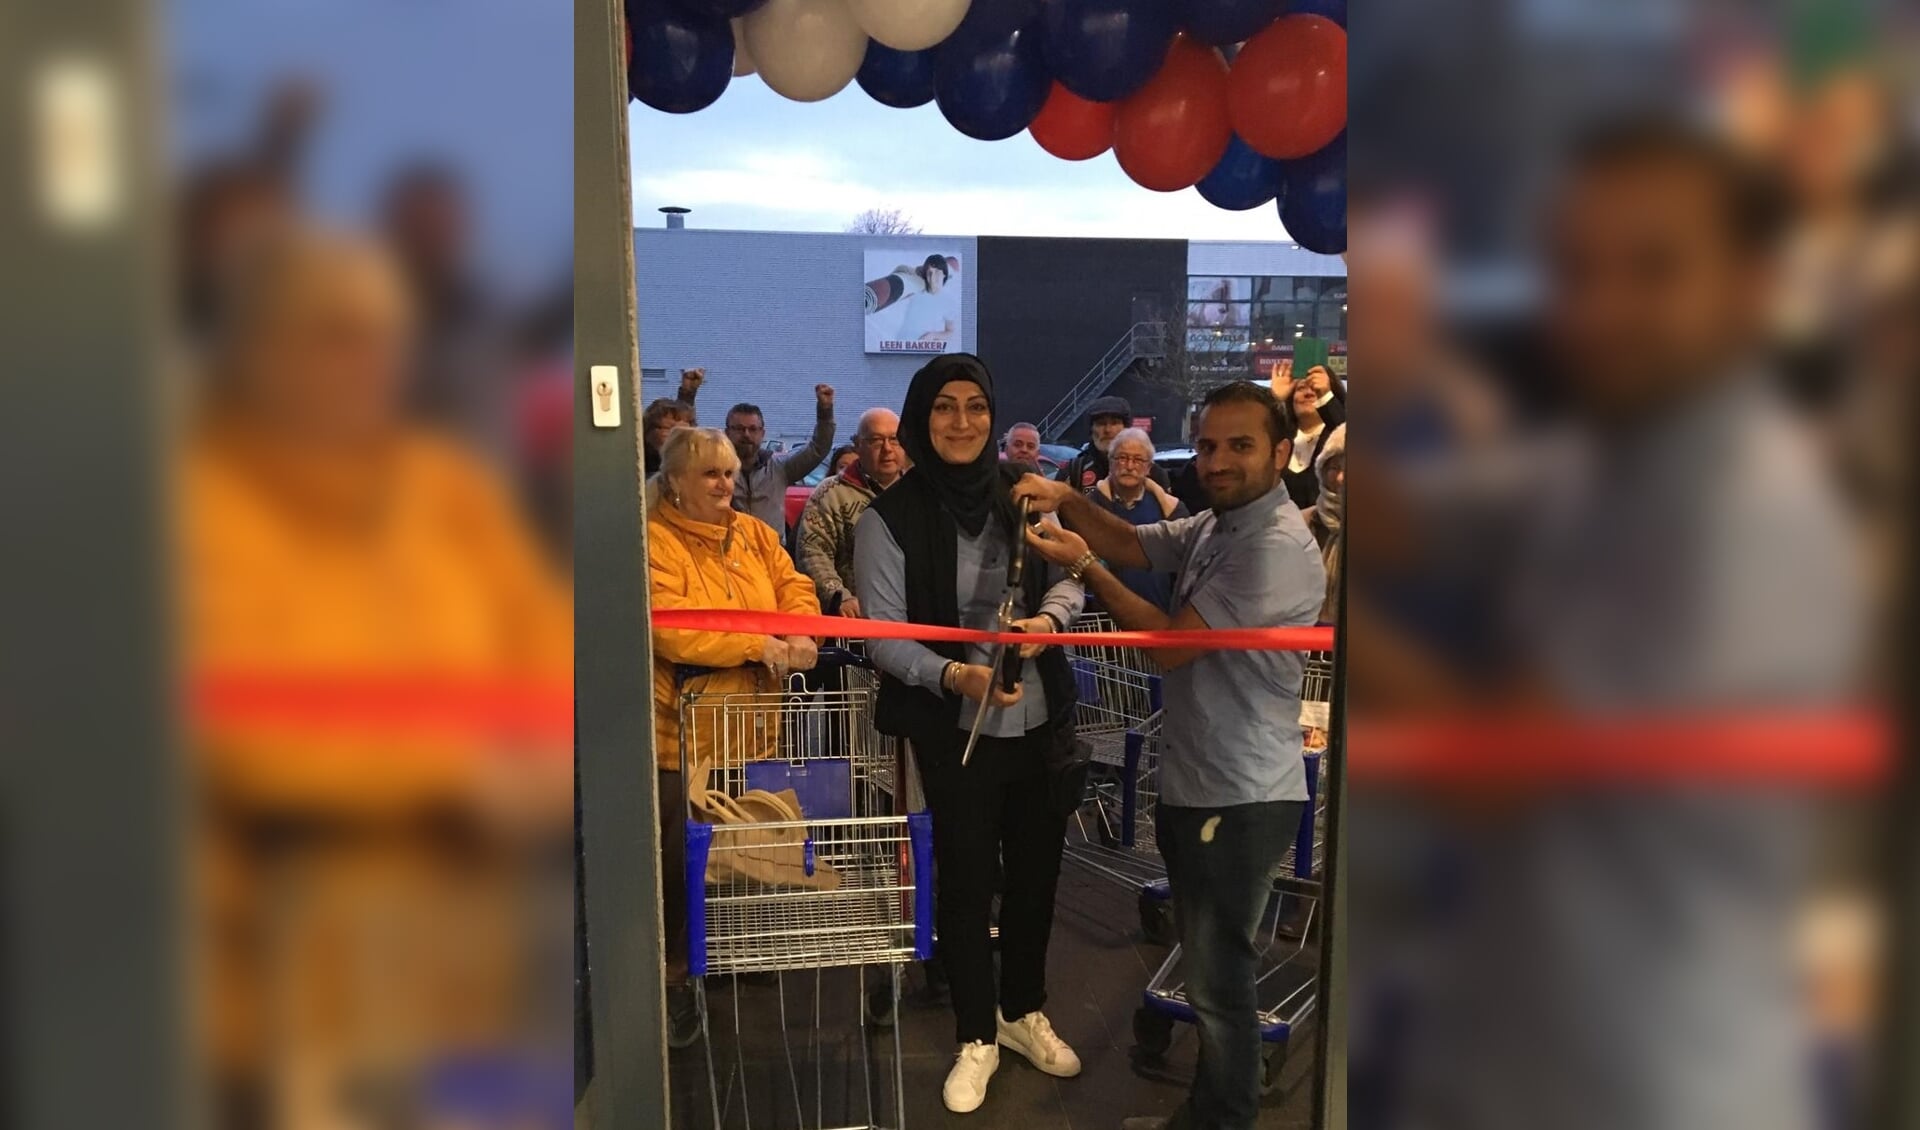 vork markering Visser Grote drukte bij opening van Aldi - Haarlems Weekblad | Nieuws uit de regio  Haarlem